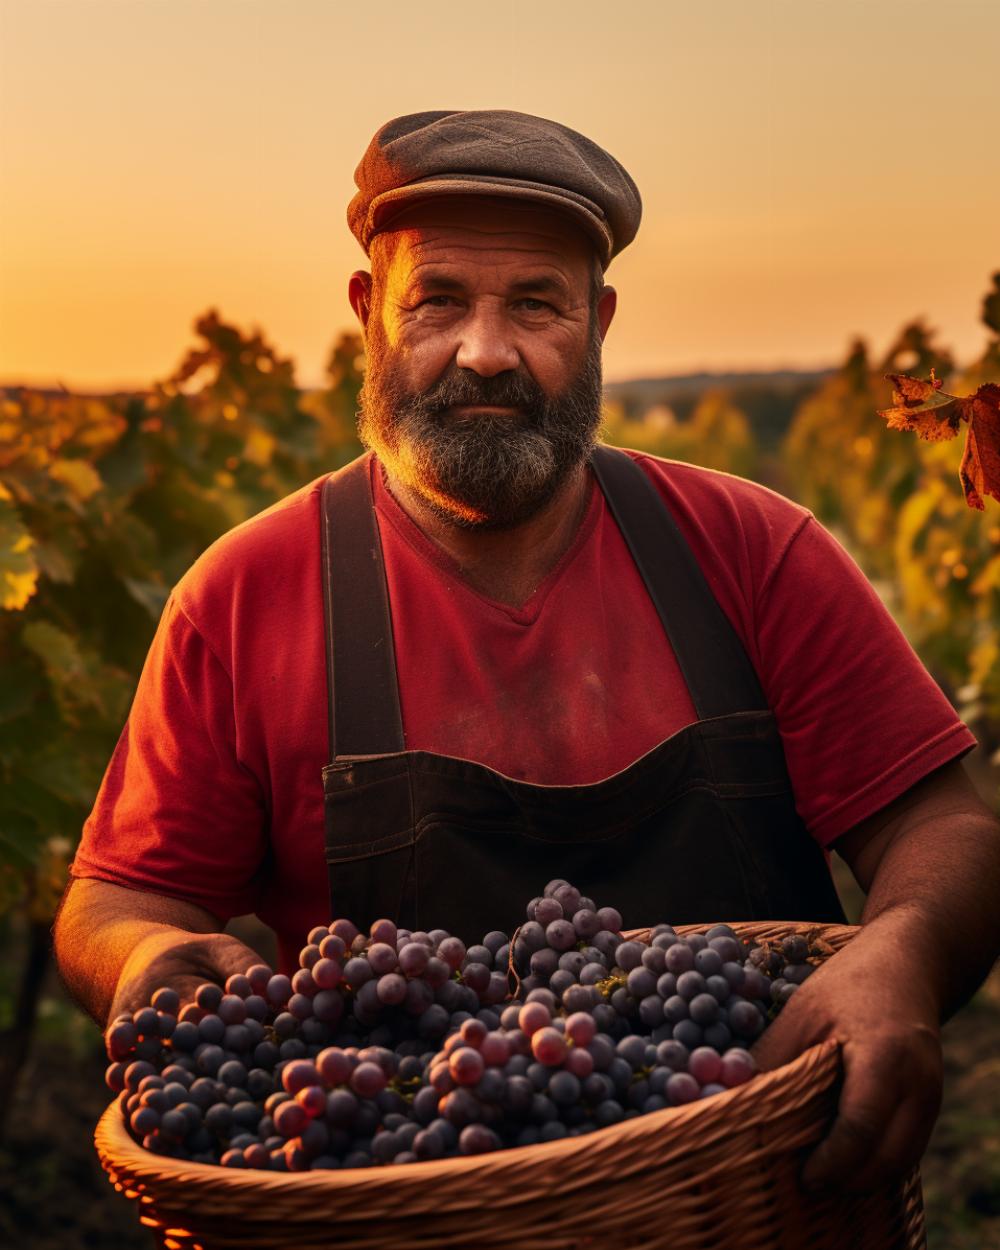 Les viticulteurs de Bourgogne composent avec les conditions climatiques et géoloiques de leur région